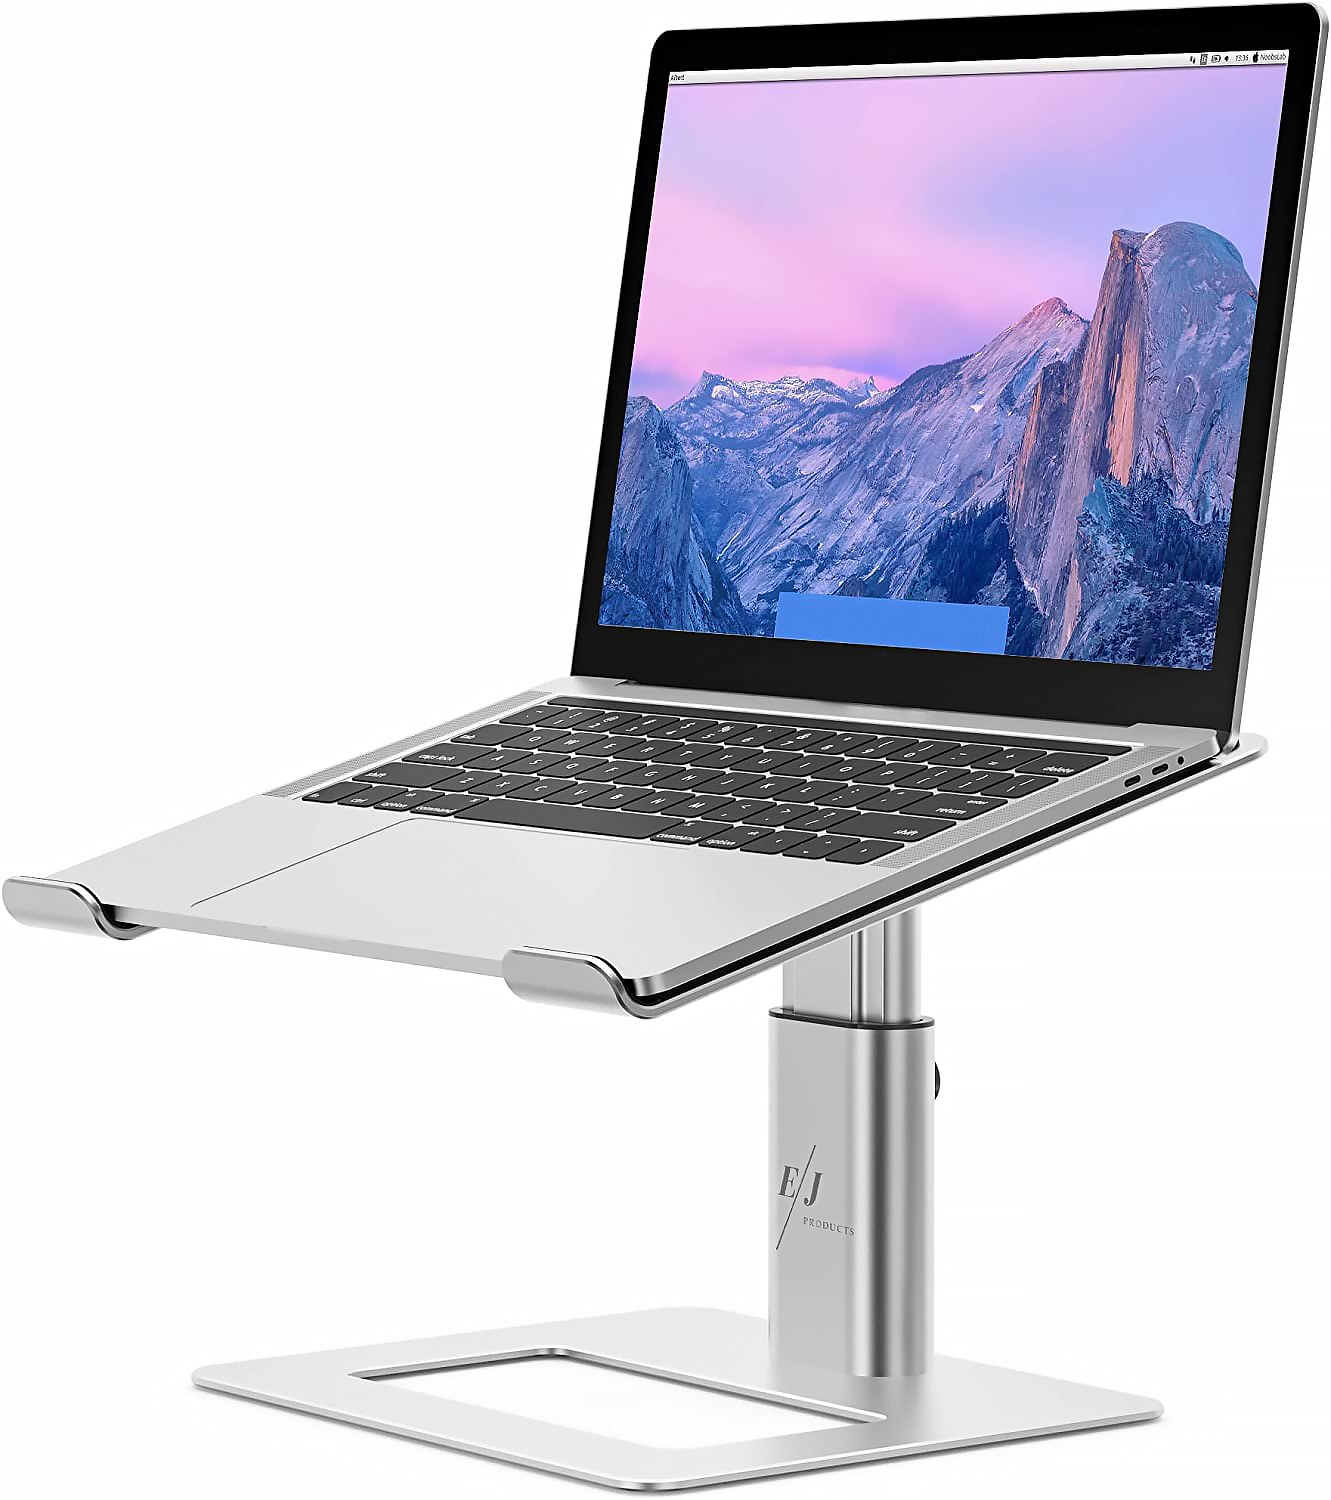 Stand multifunctional pentru laptop, fabricat din aluminiu, ergonomic si portabil, EJ PRODUCTS